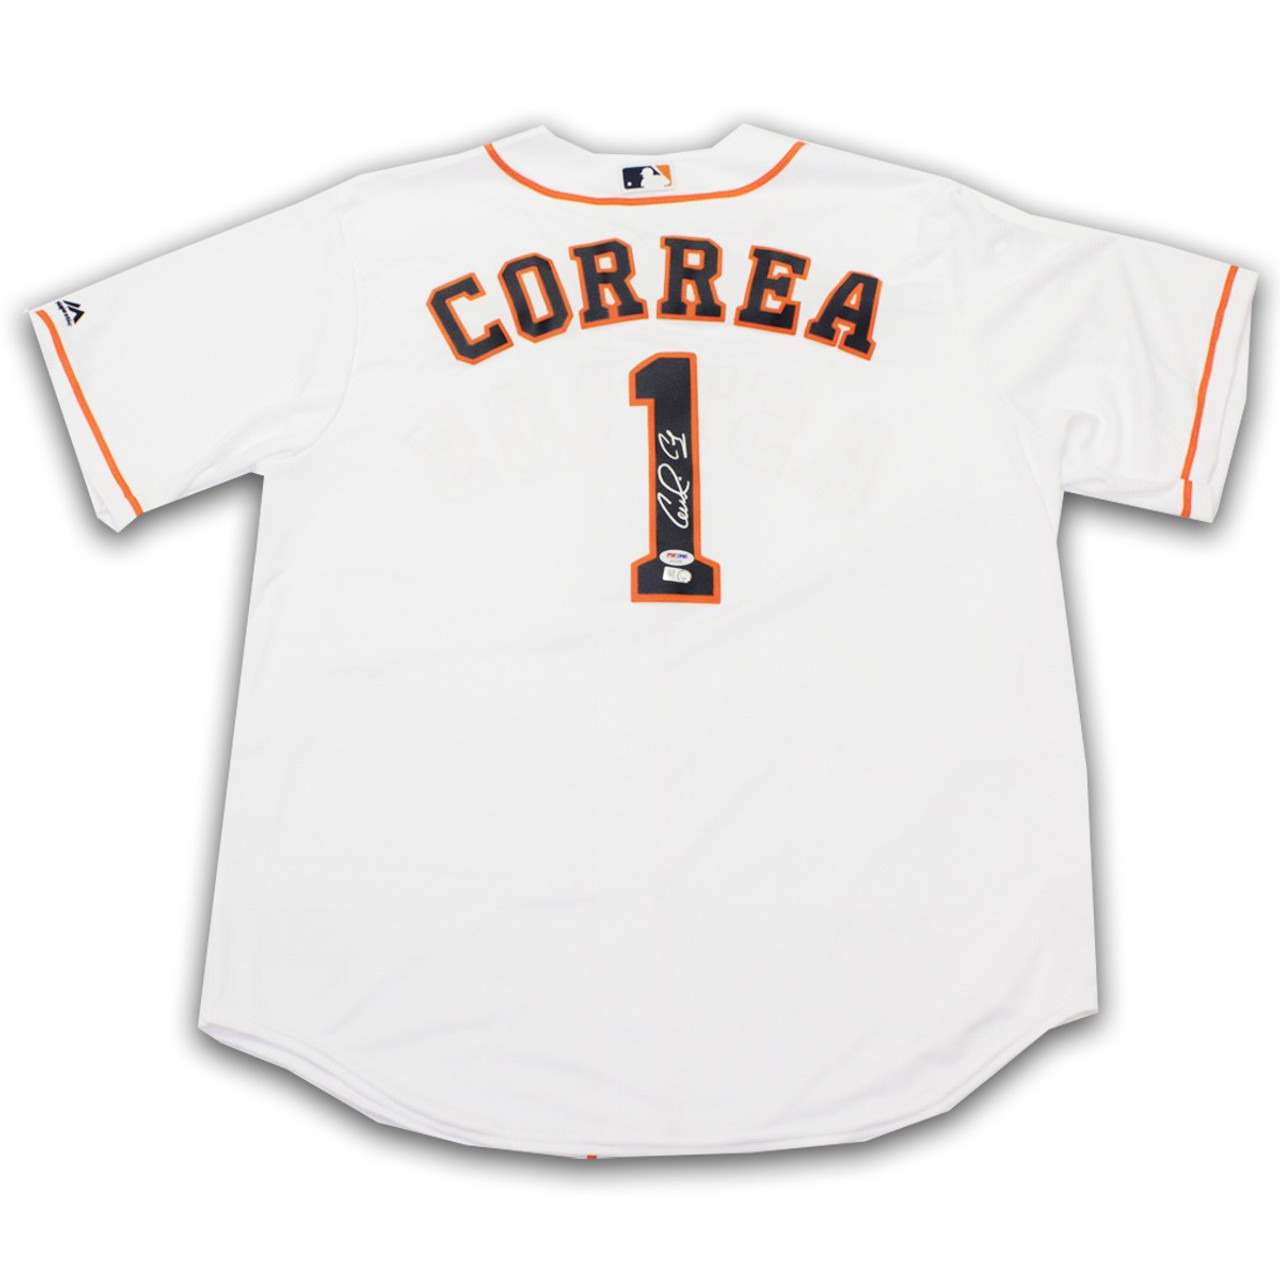 Carlos Correa Autographed Houston Astros Jersey